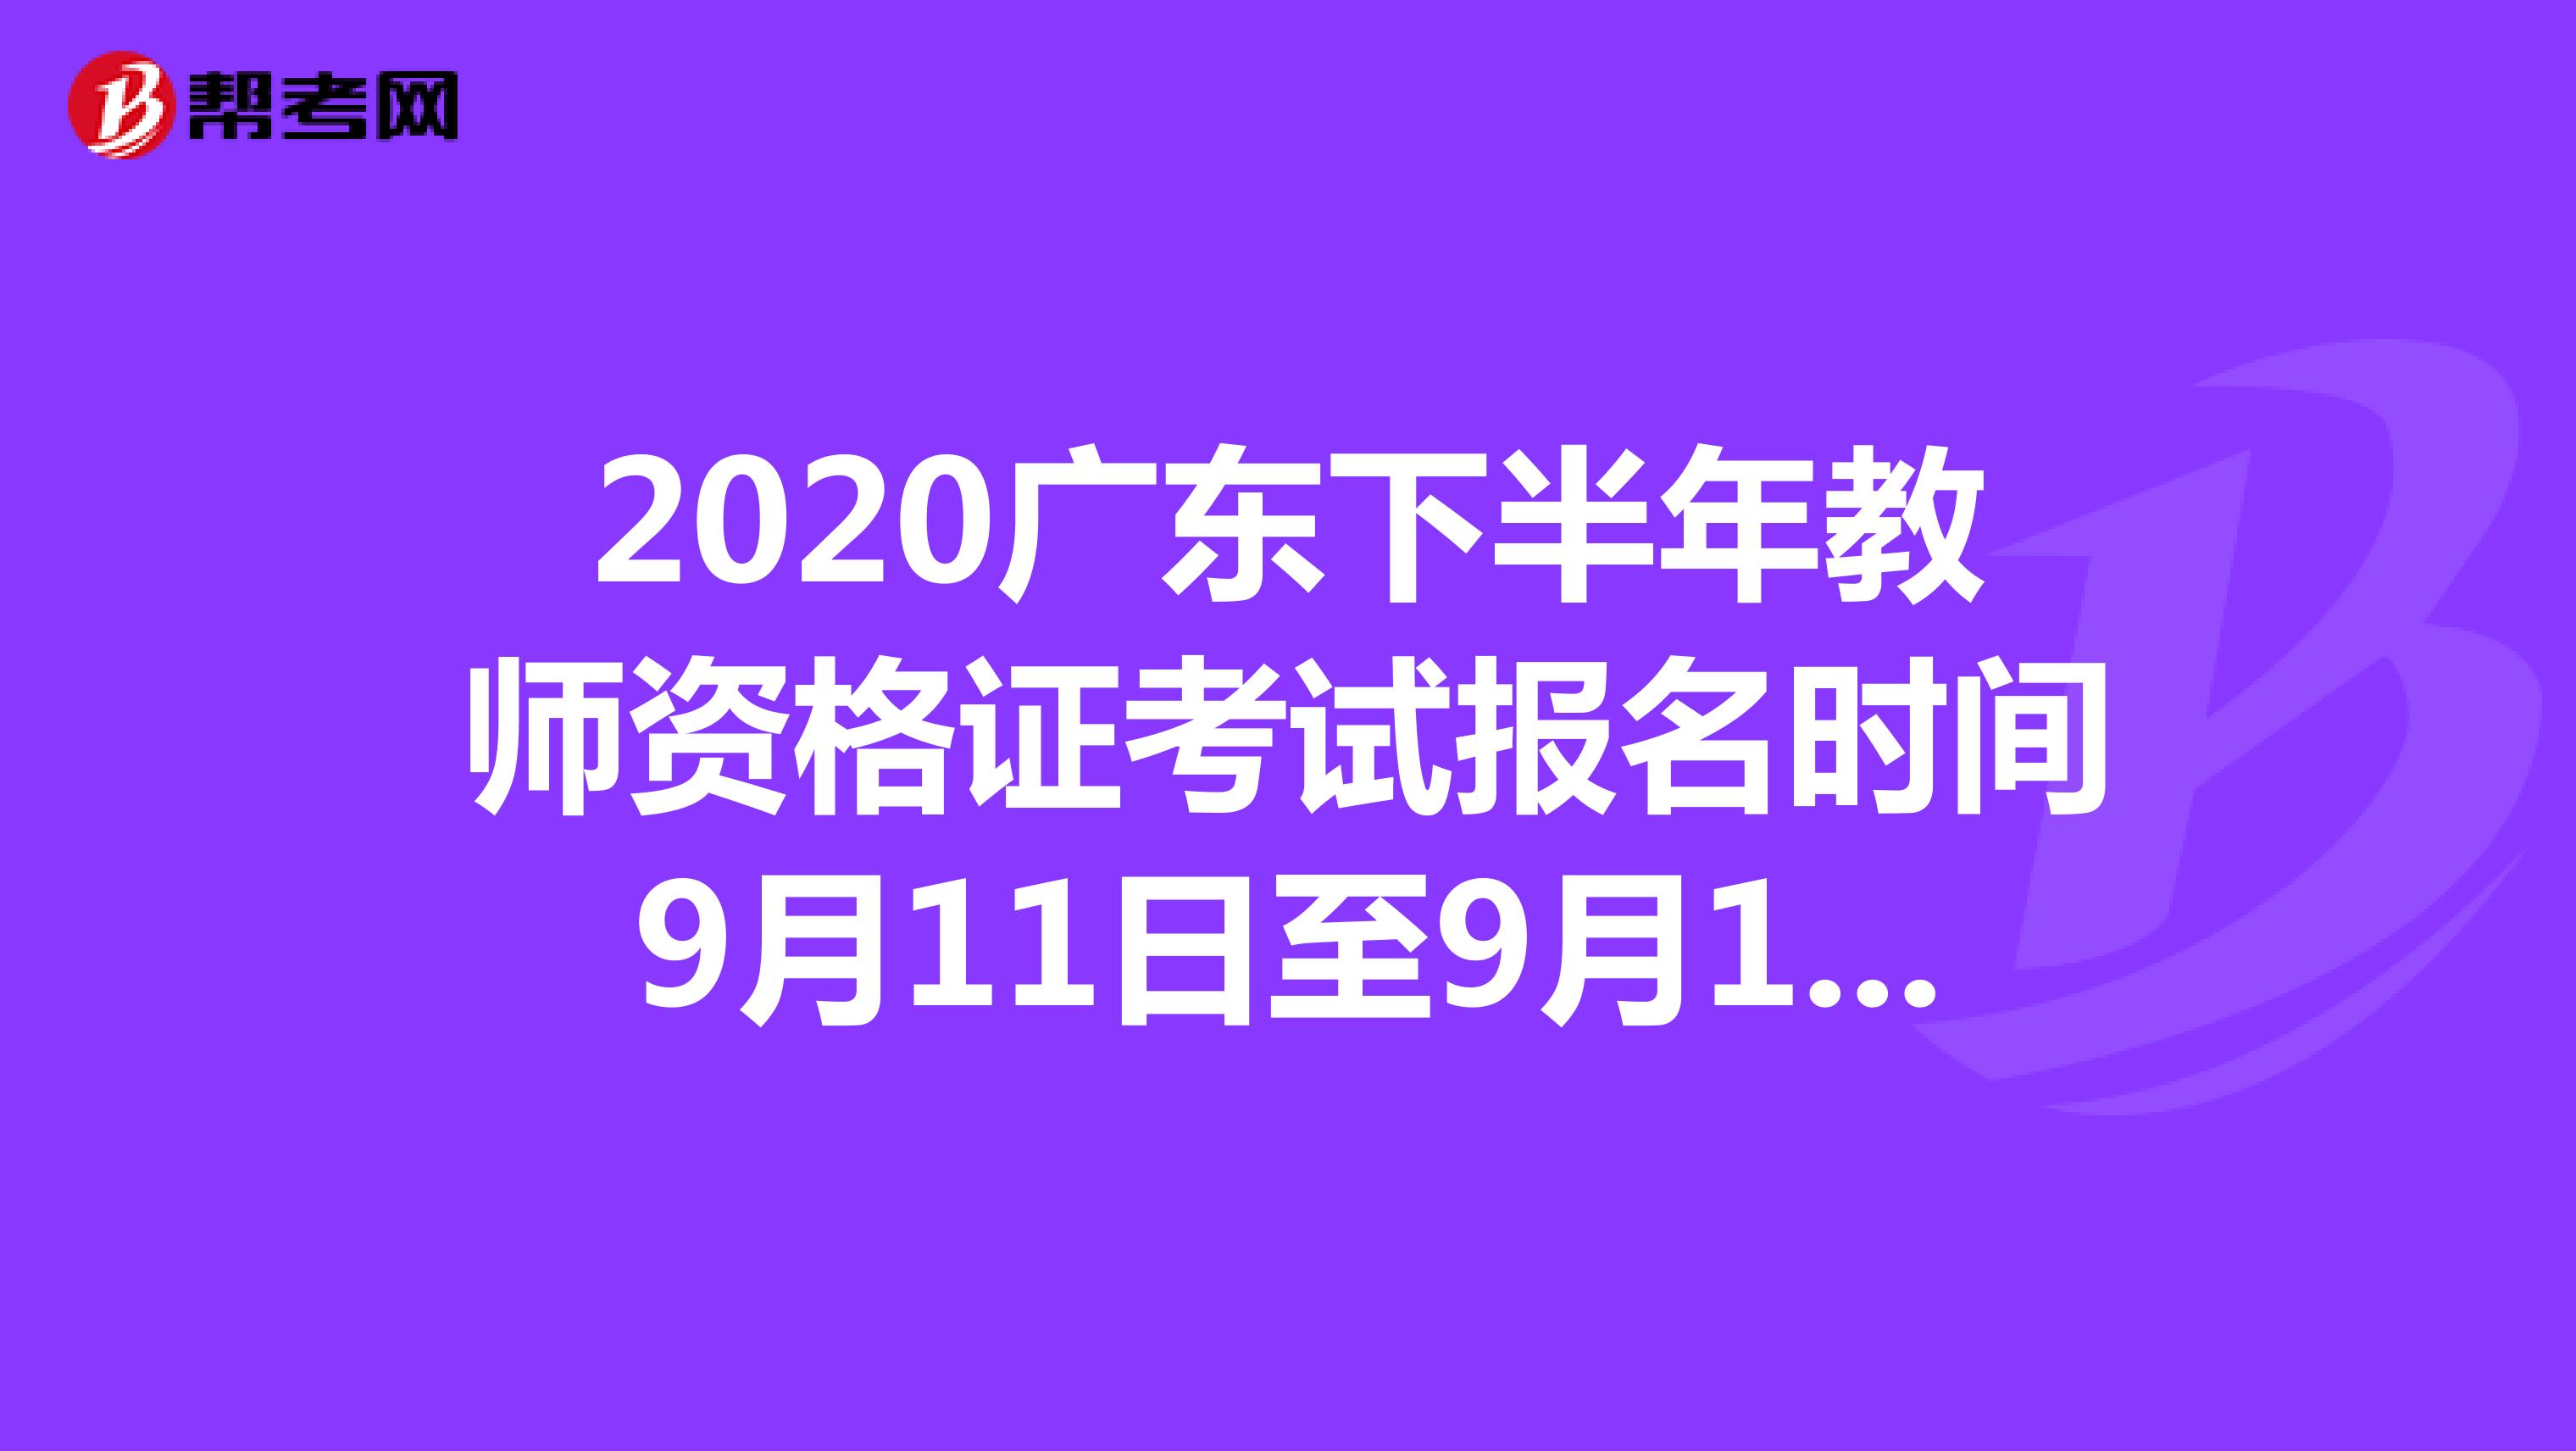 2020广东下半年教师资格证考试报名时间9月11日至9月12日